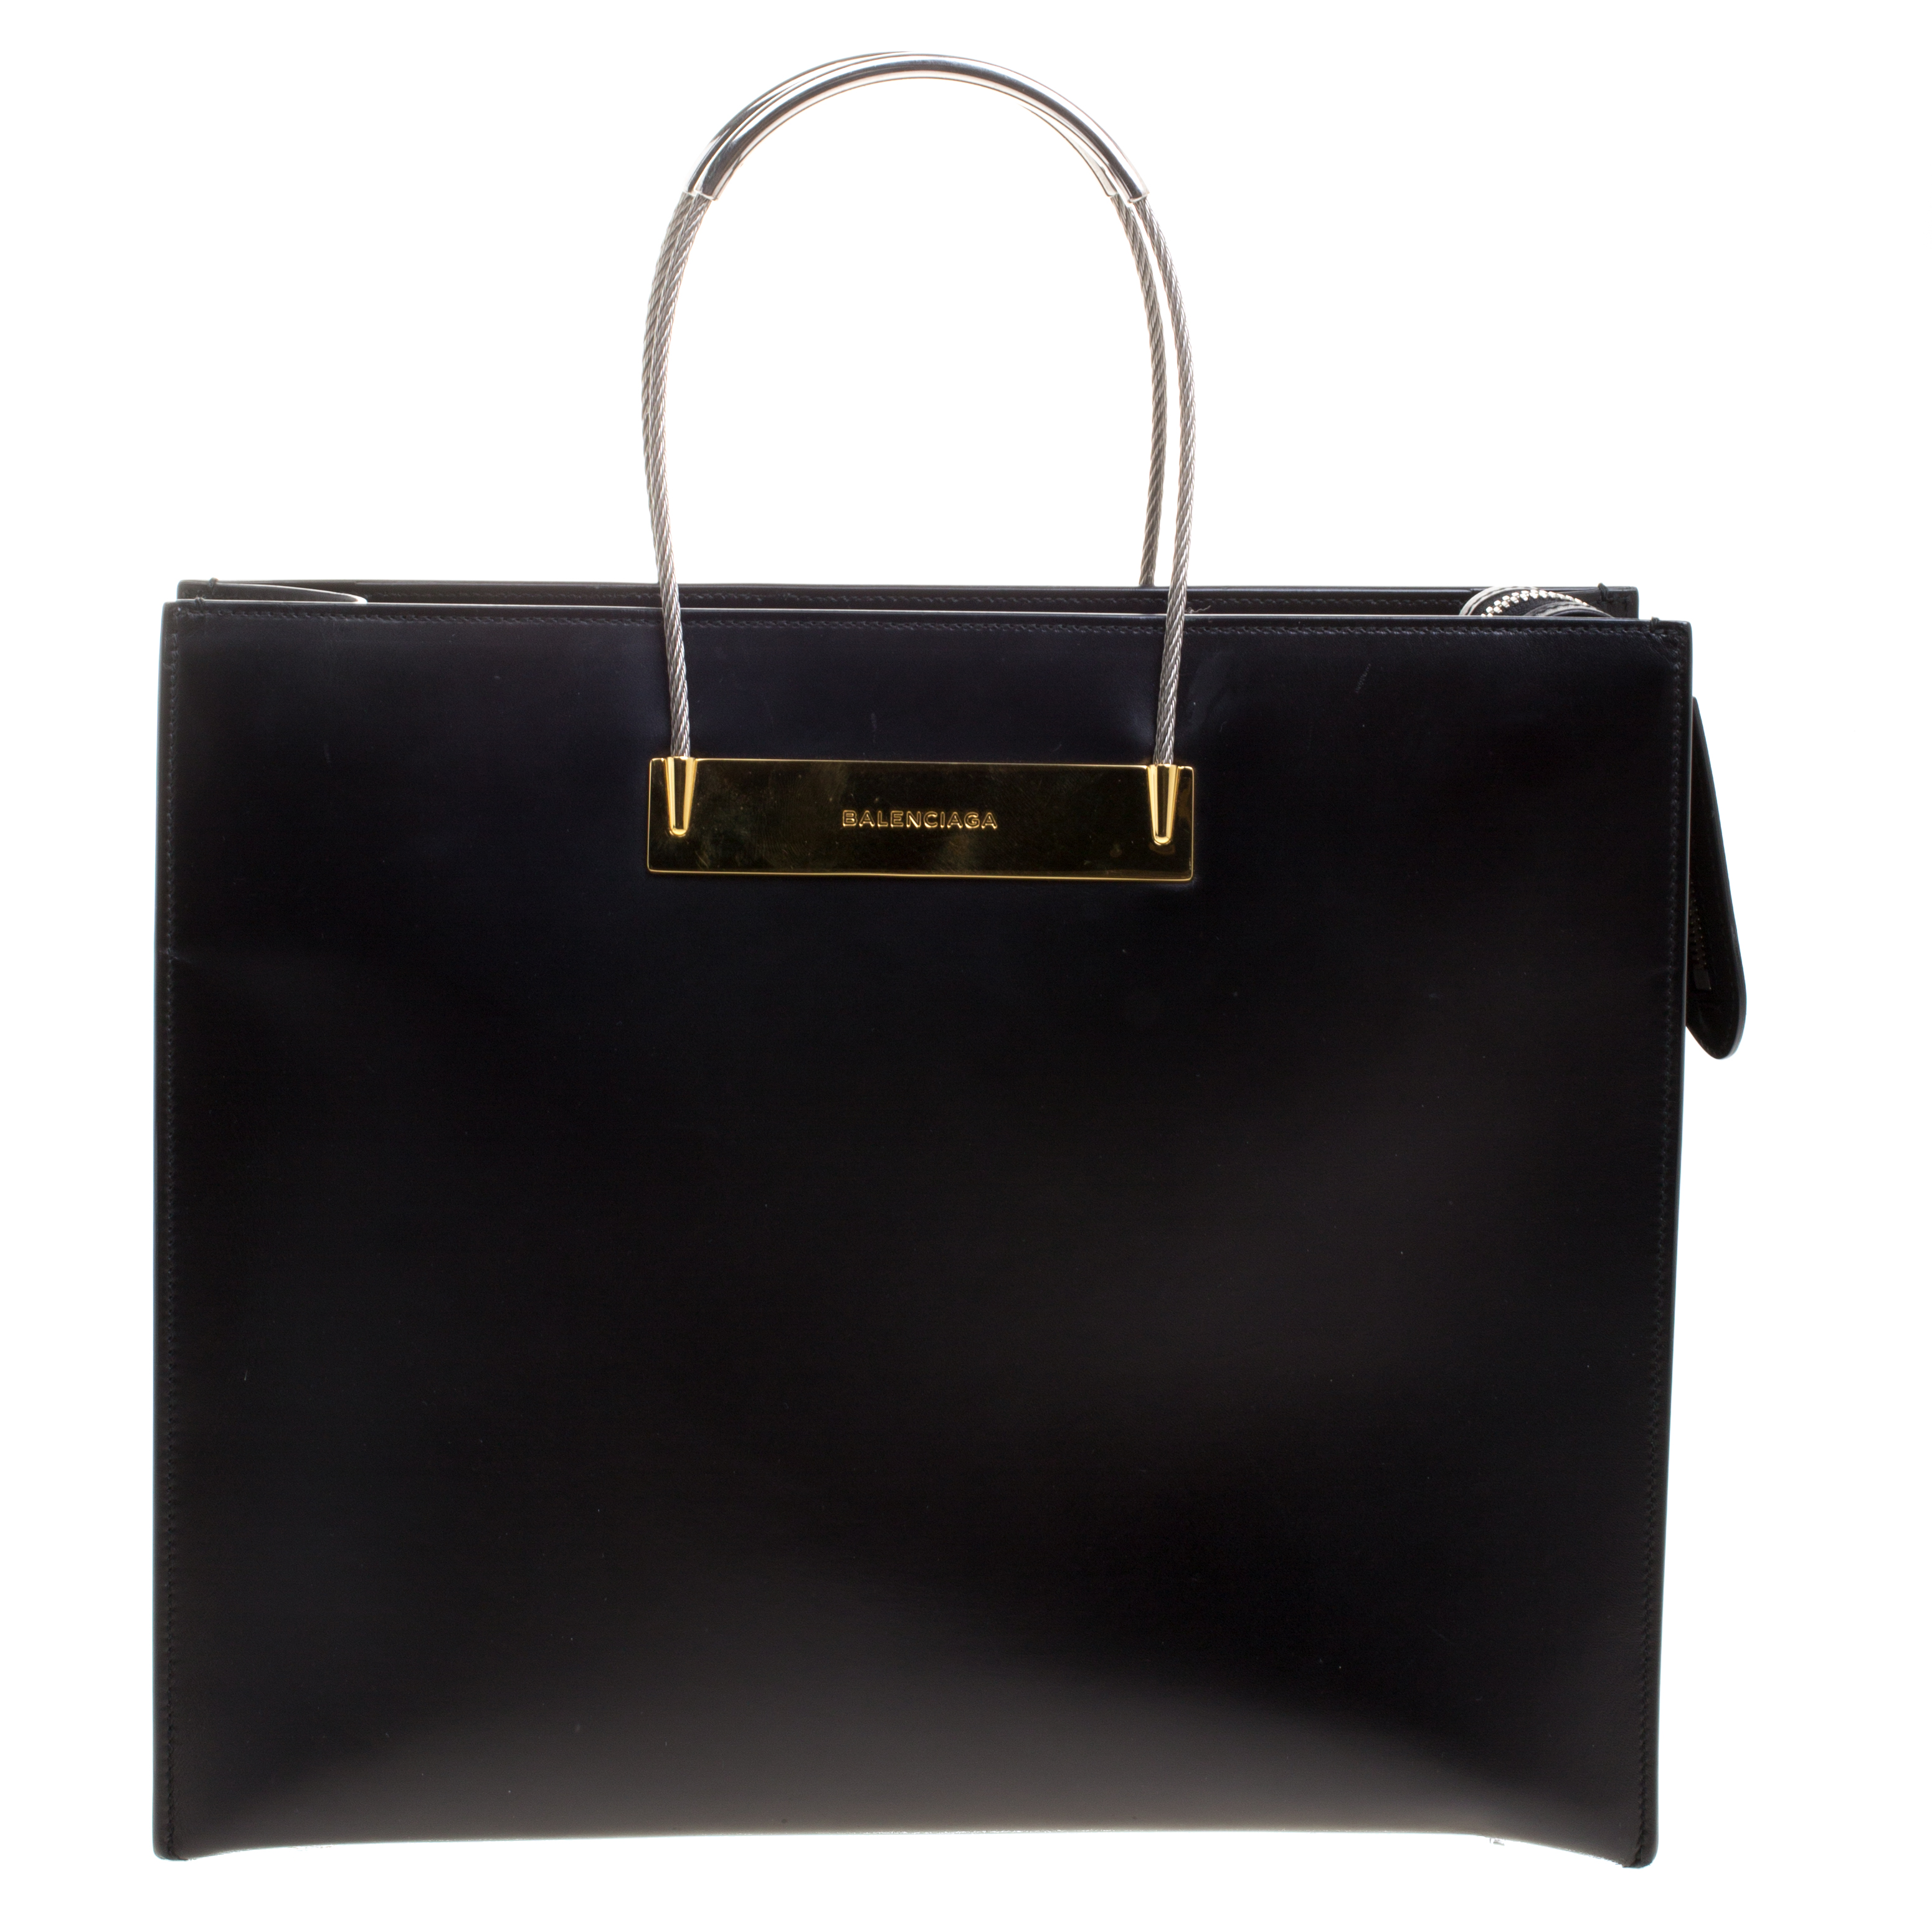 Balenciaga Black Leather Cable Shopper Tote Balenciaga | The Luxury Closet